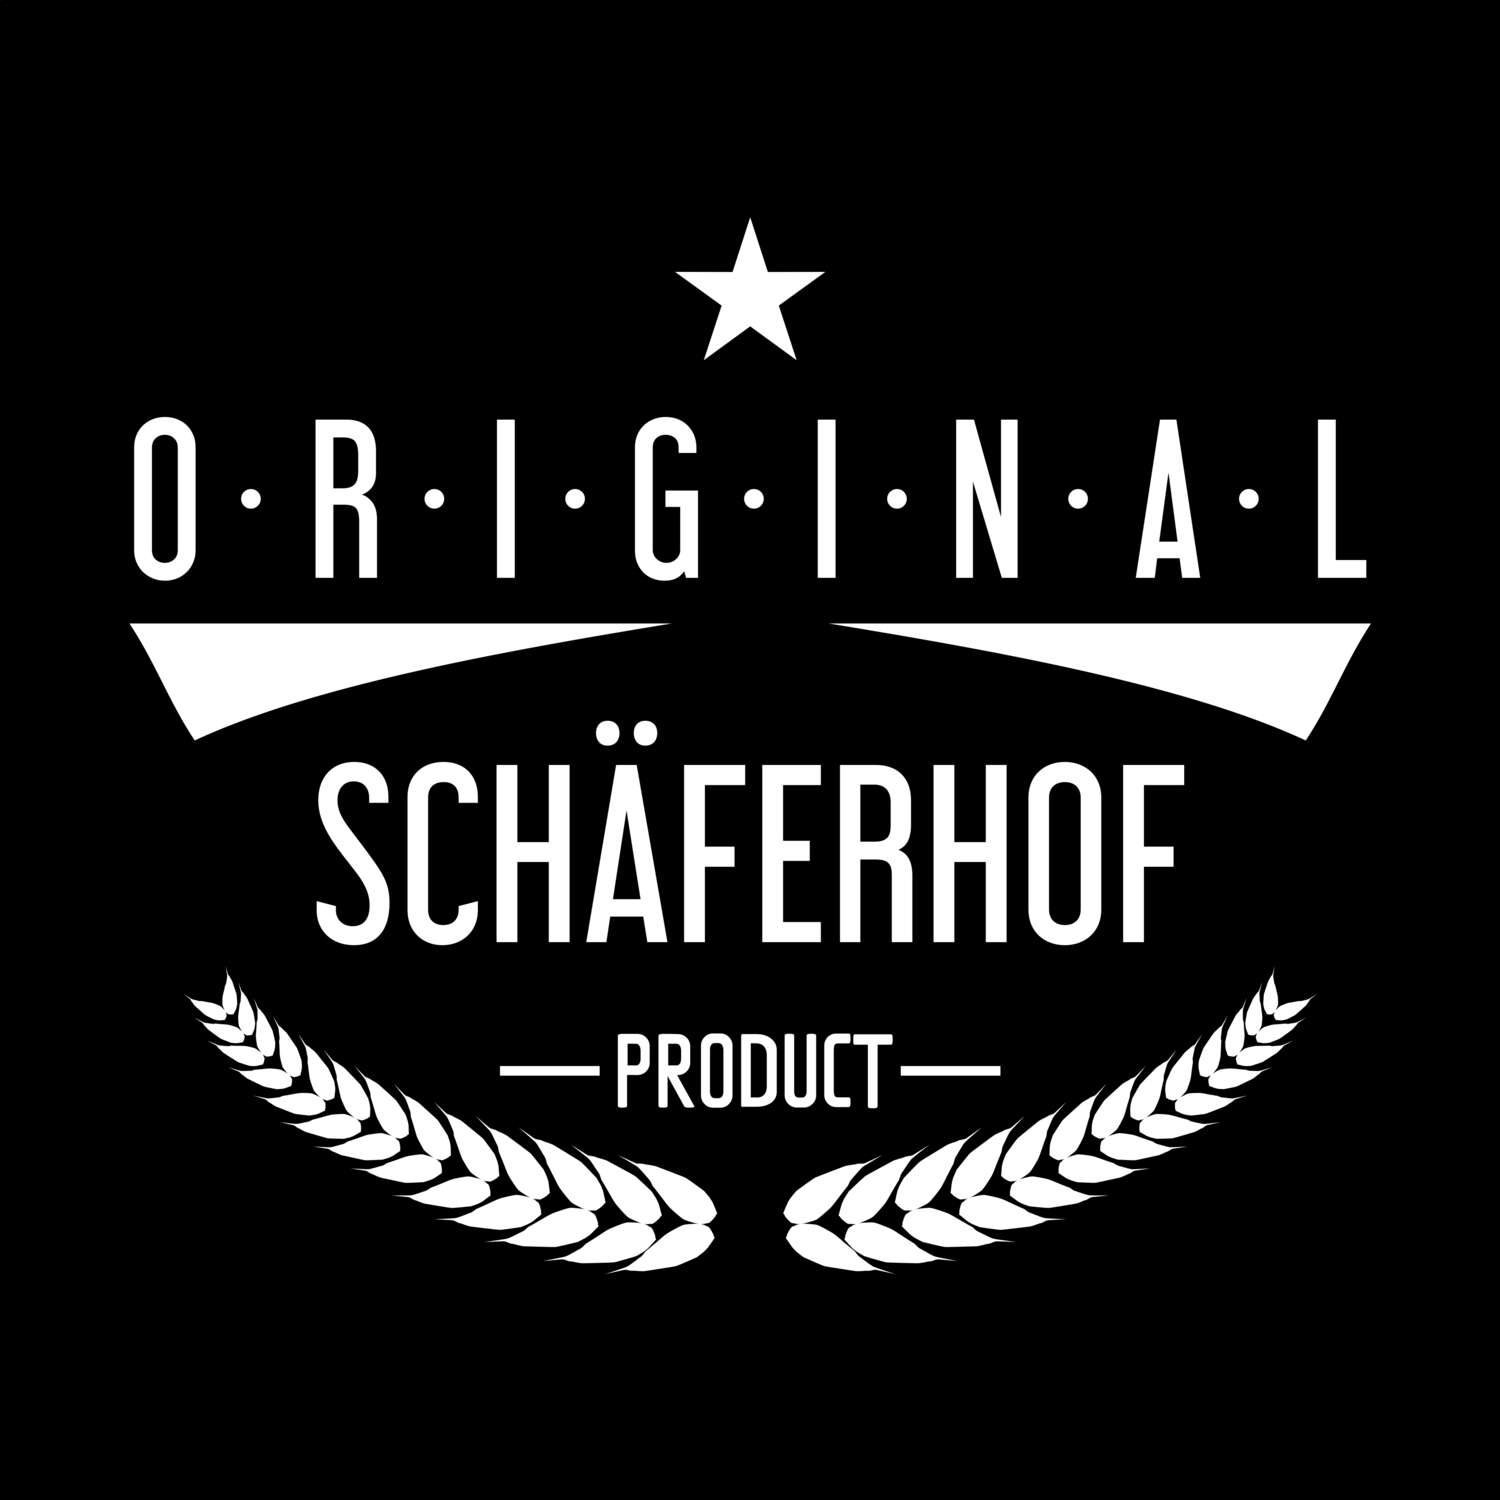 Schäferhof T-Shirt »Original Product«